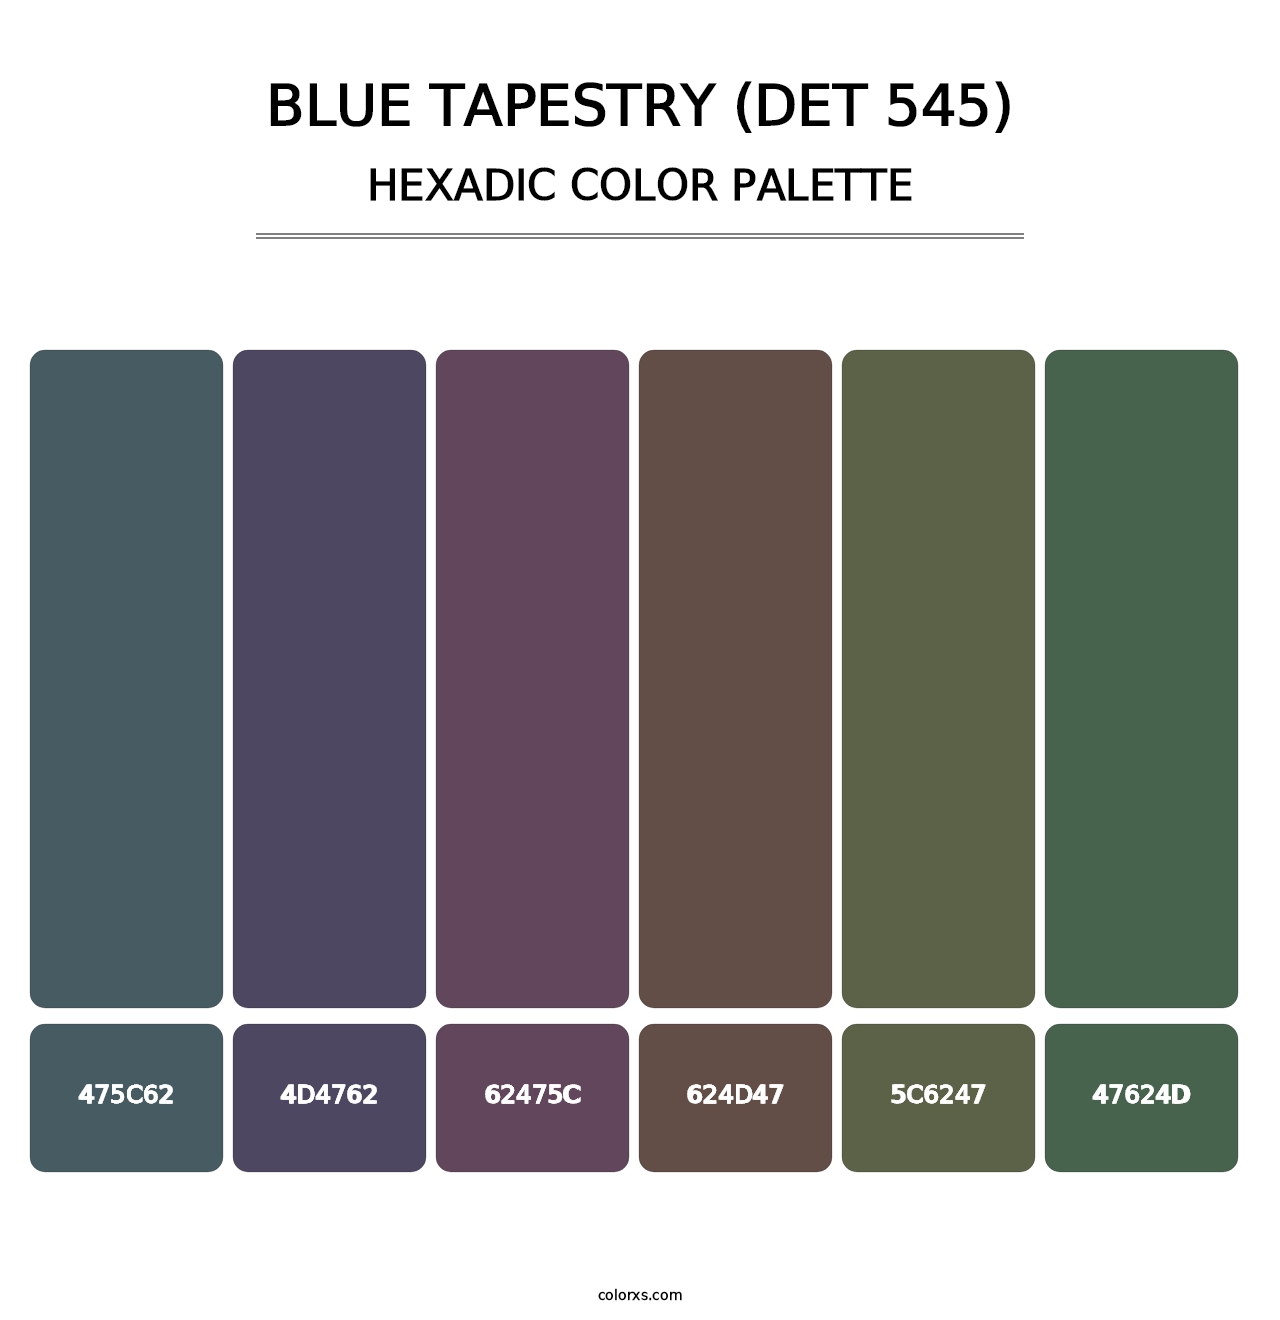 Blue Tapestry (DET 545) - Hexadic Color Palette